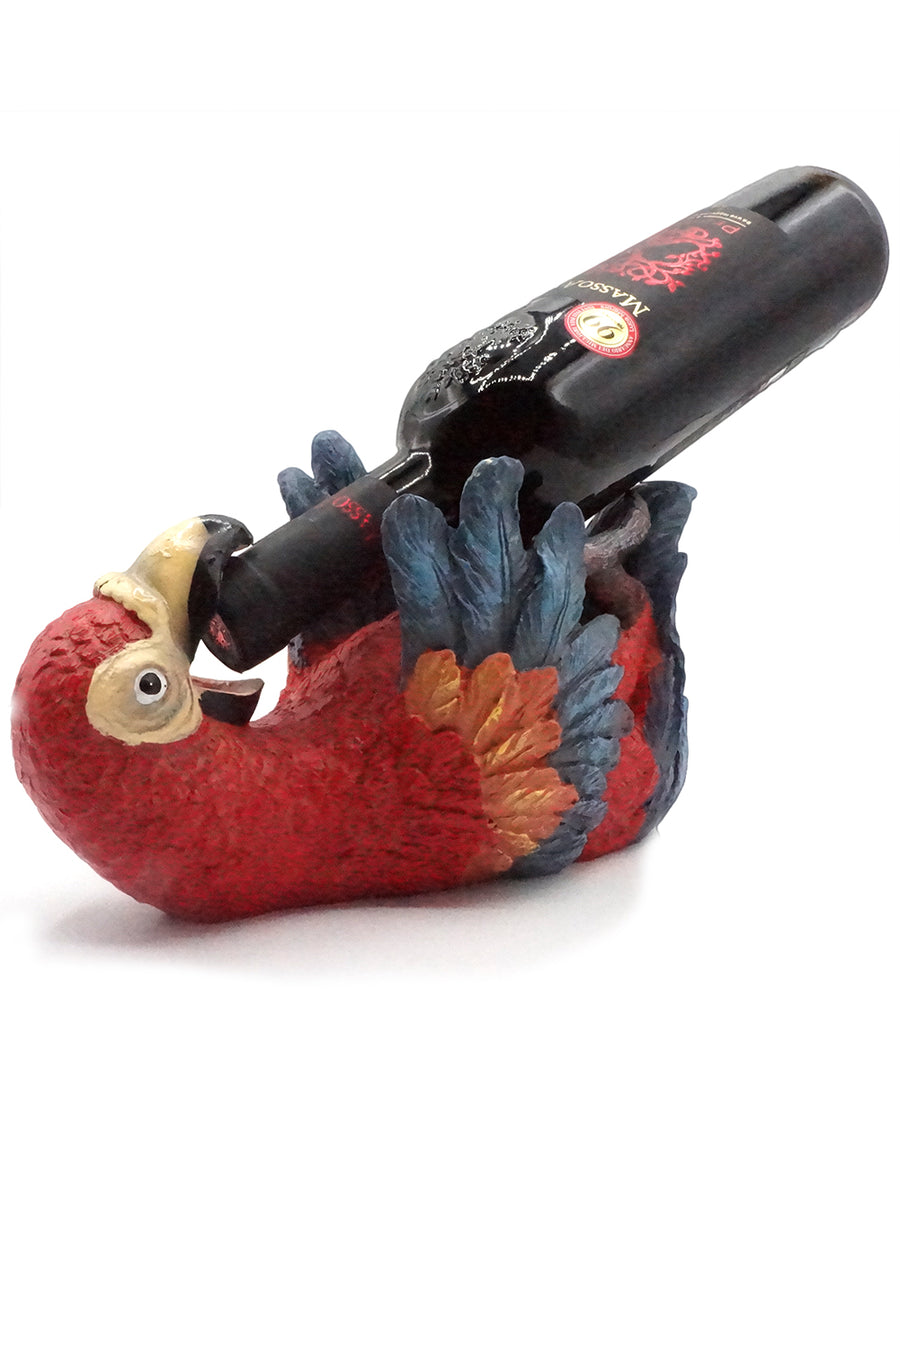 Parrot Polynesin Wine Bottle holder